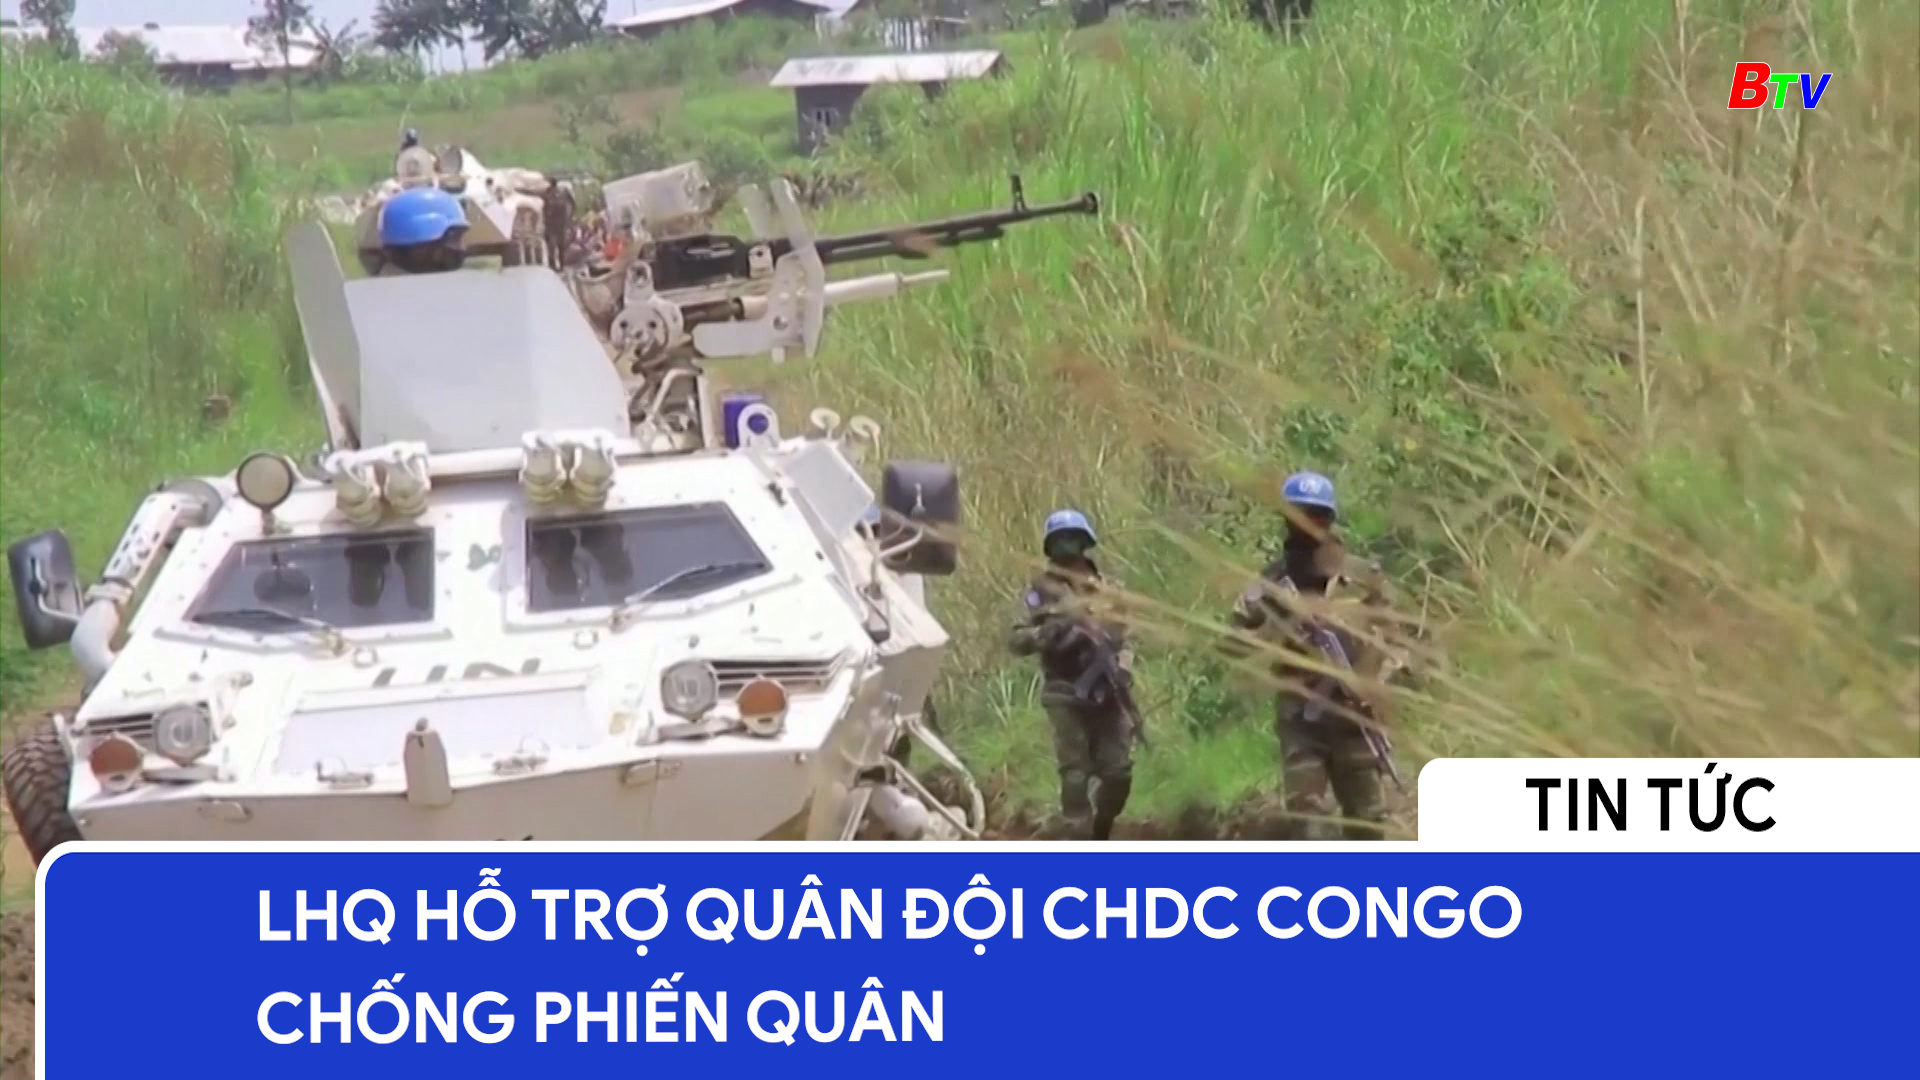 LHQ hỗ trợ quân đội CHDC Congo chống phiến quân	